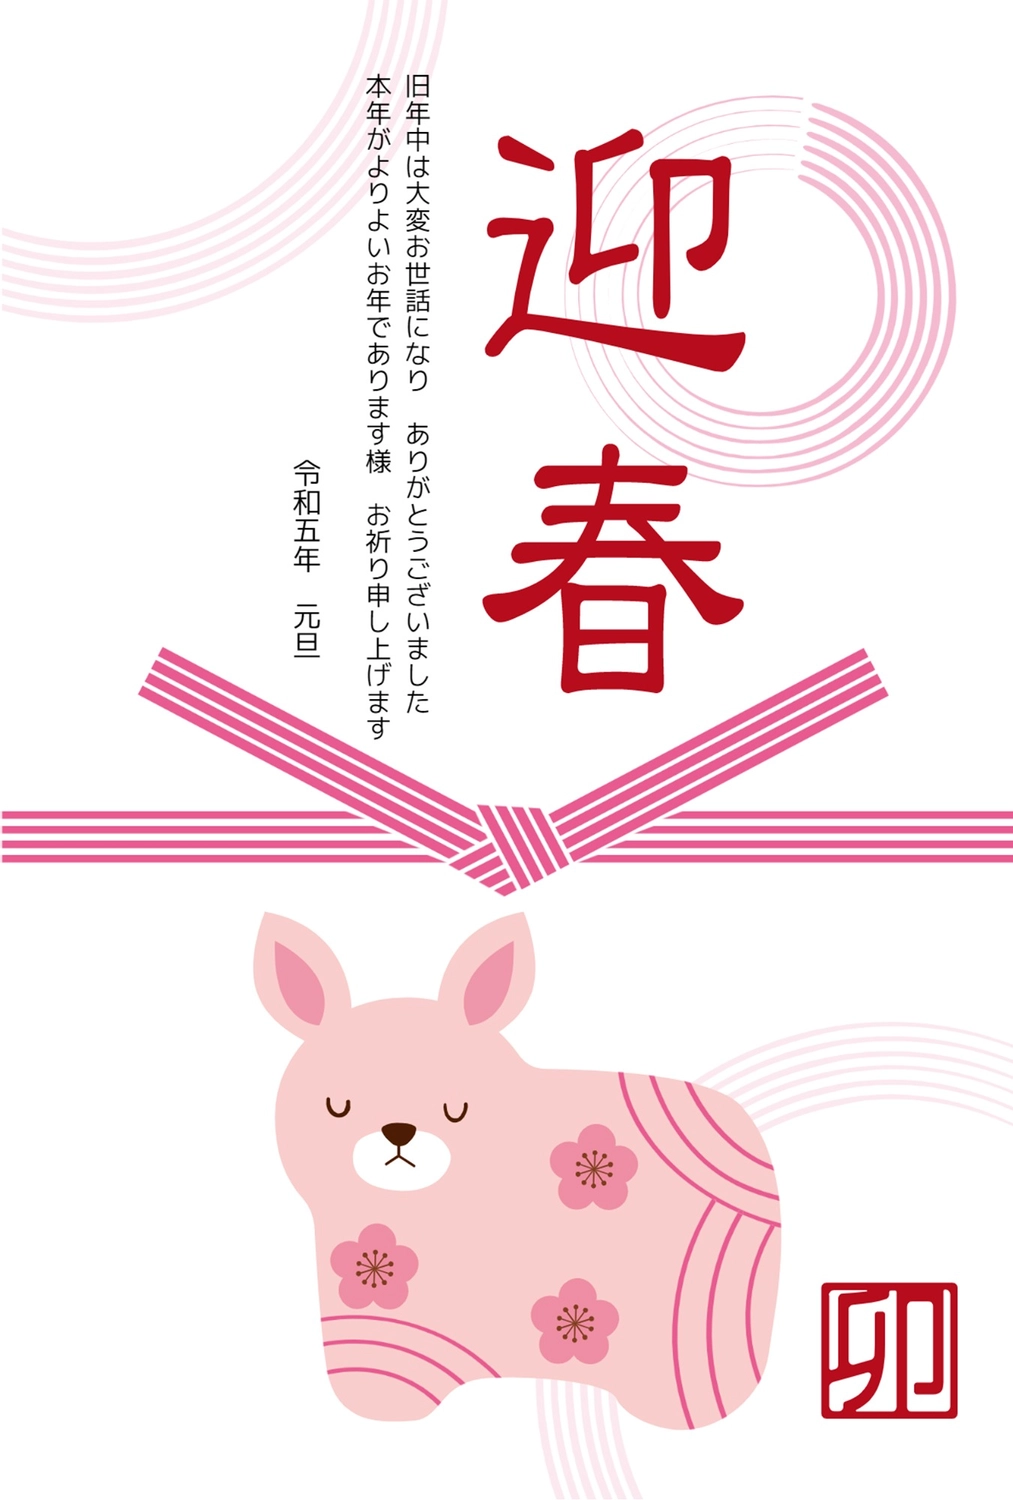 うさぎの置き物の迎春年賀状, animal, concord, casual, New Year Card template